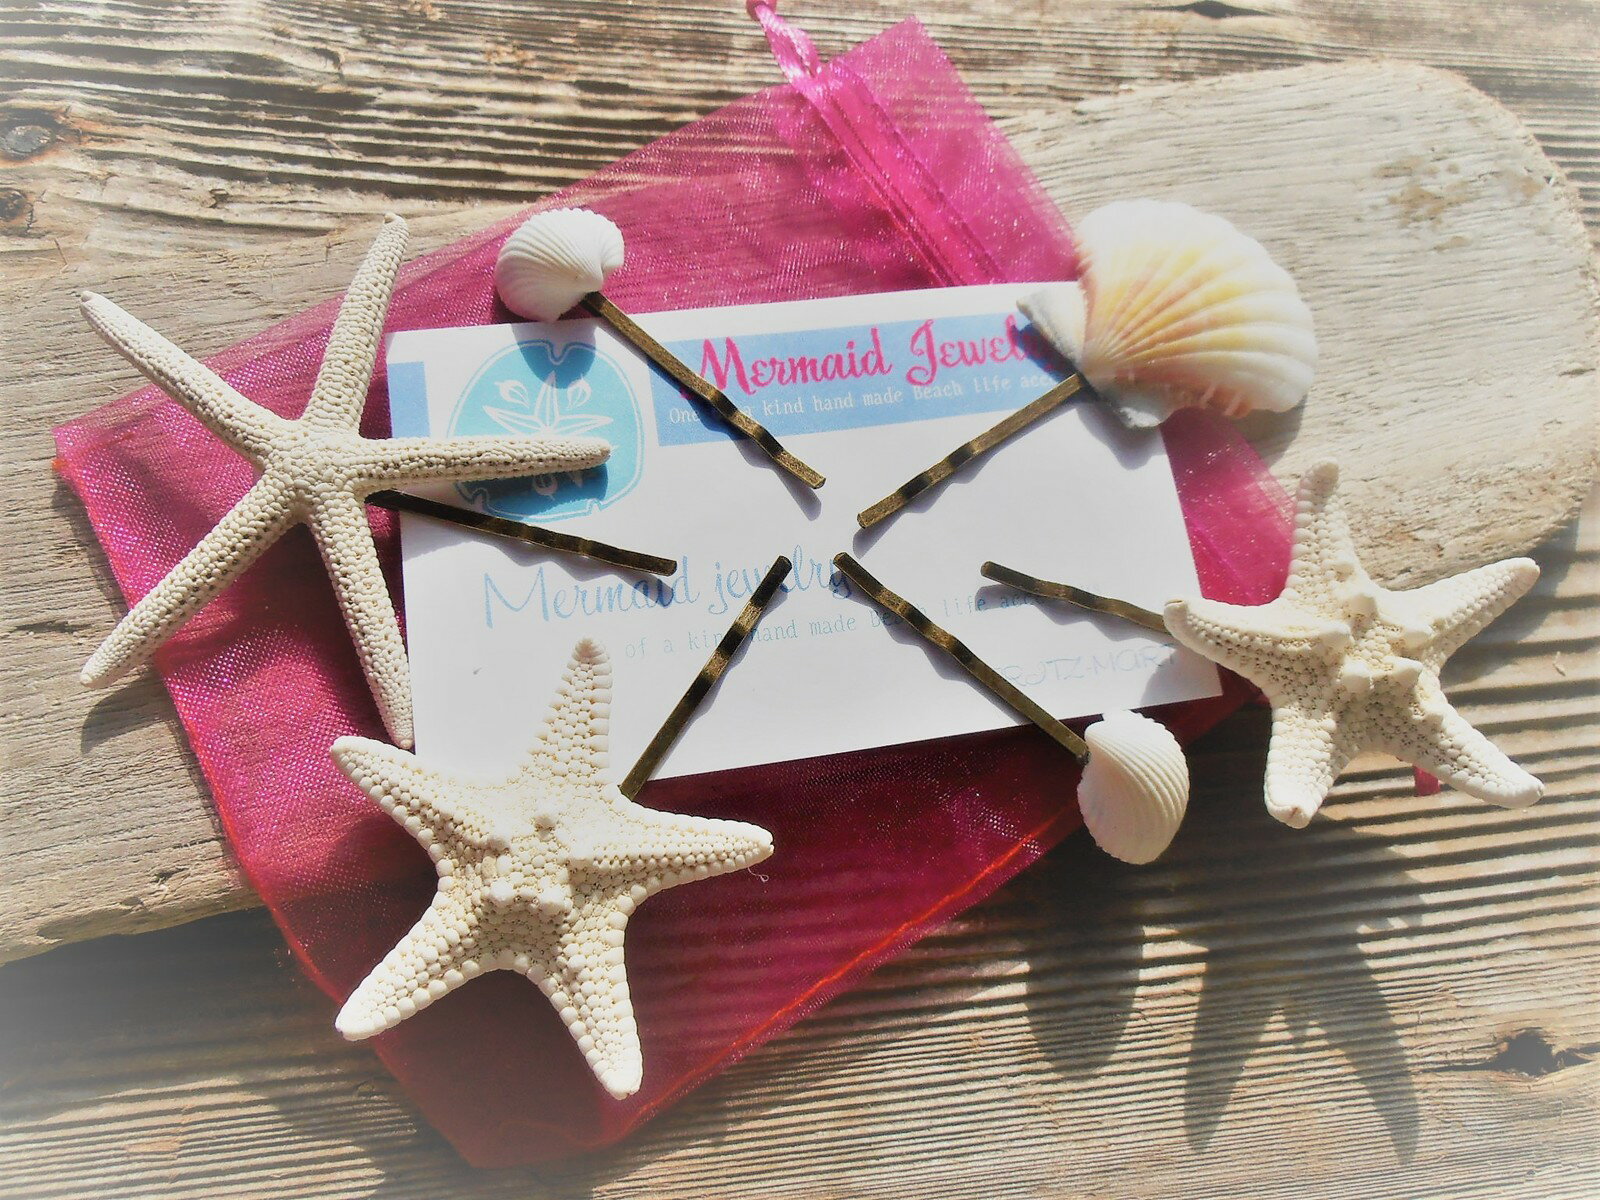 Mermaid jewelry スターフィッシュ シェル ヘアピンセット 小さな貝 ミニコブヒトデ 6セット 貝殻 髪飾り ヘアアクセサリー ハンドメイドアクセサリー ハワイアンジュエリー